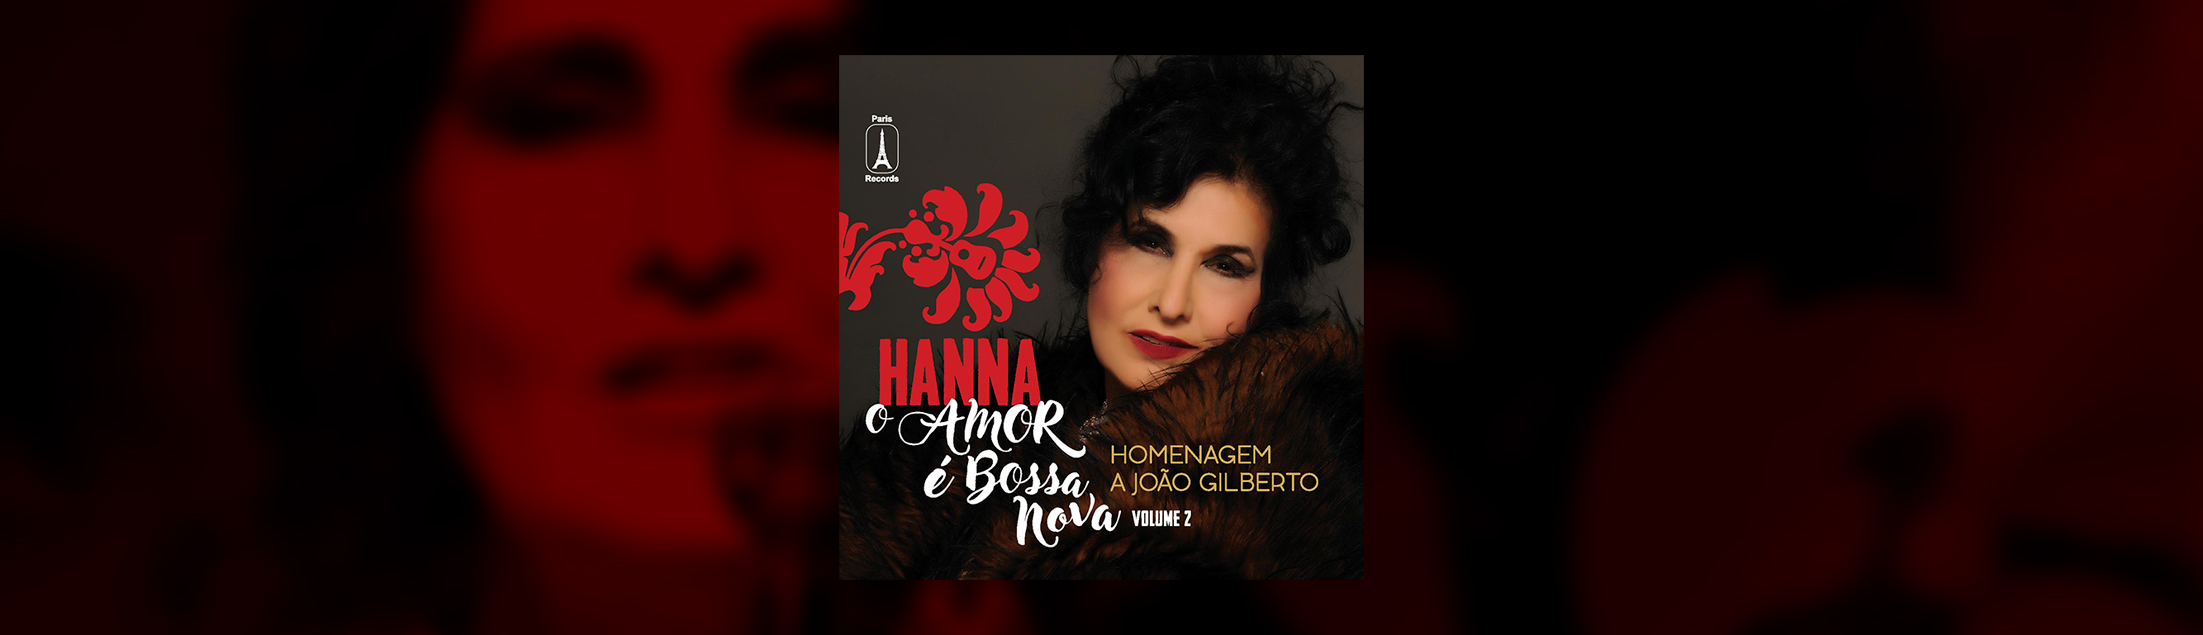 HANNA lança álbum duplo em homenagem a João Gilberto, com autorizações exclusivas